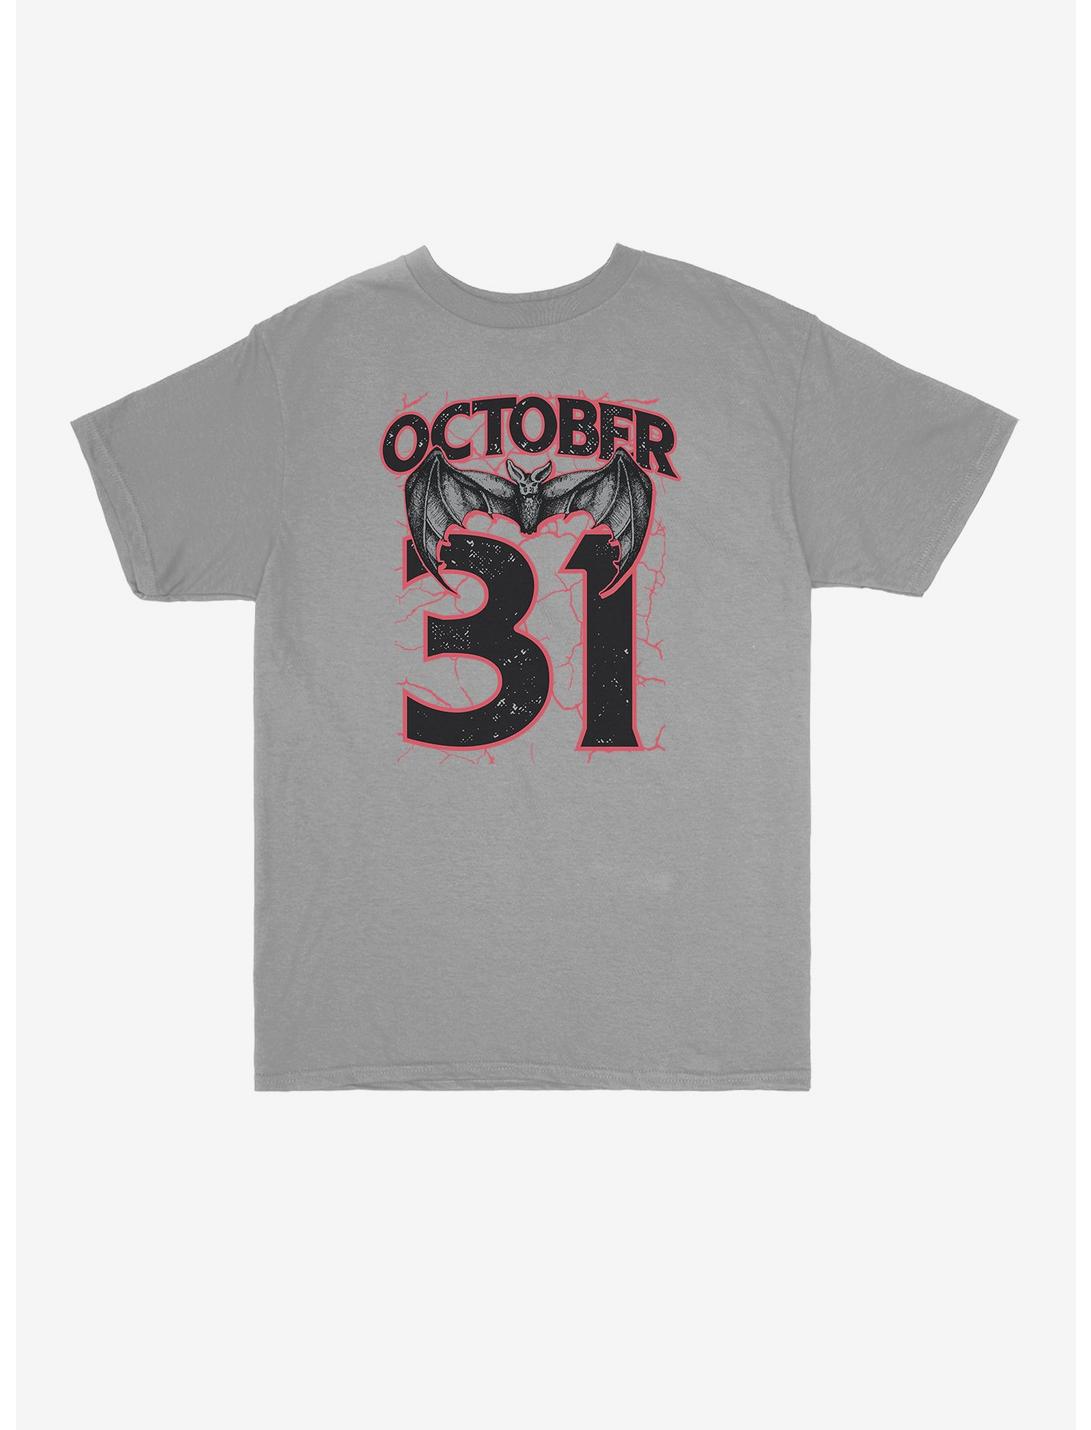 October 31 Bat Youth T-Shirt, , hi-res